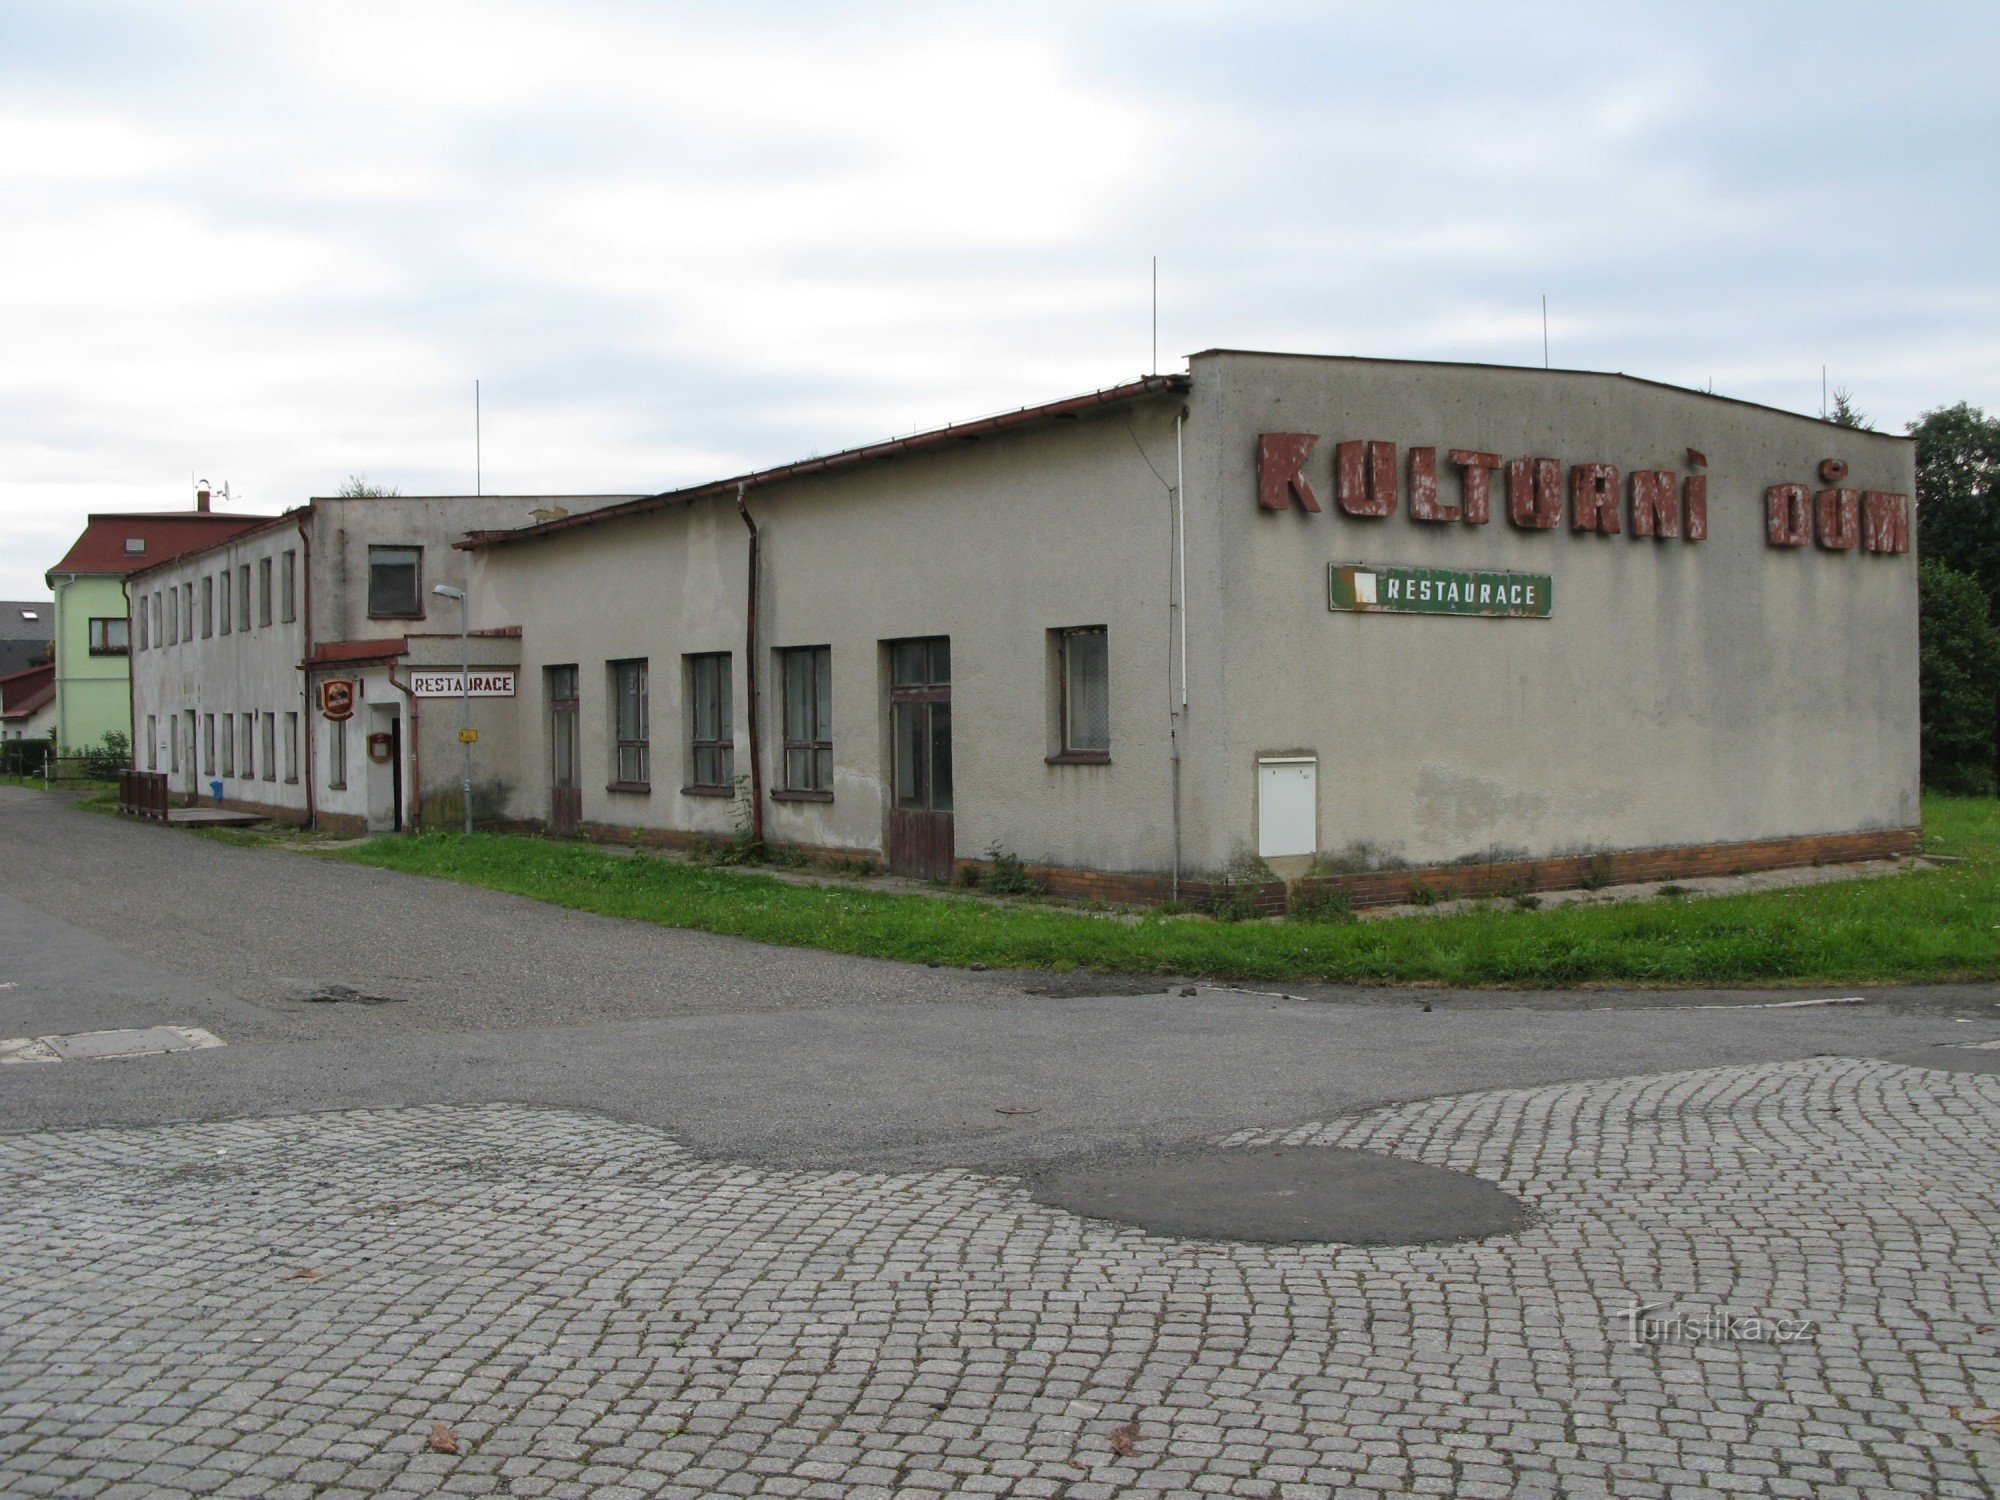 Stagno, centro culturale dal 1977